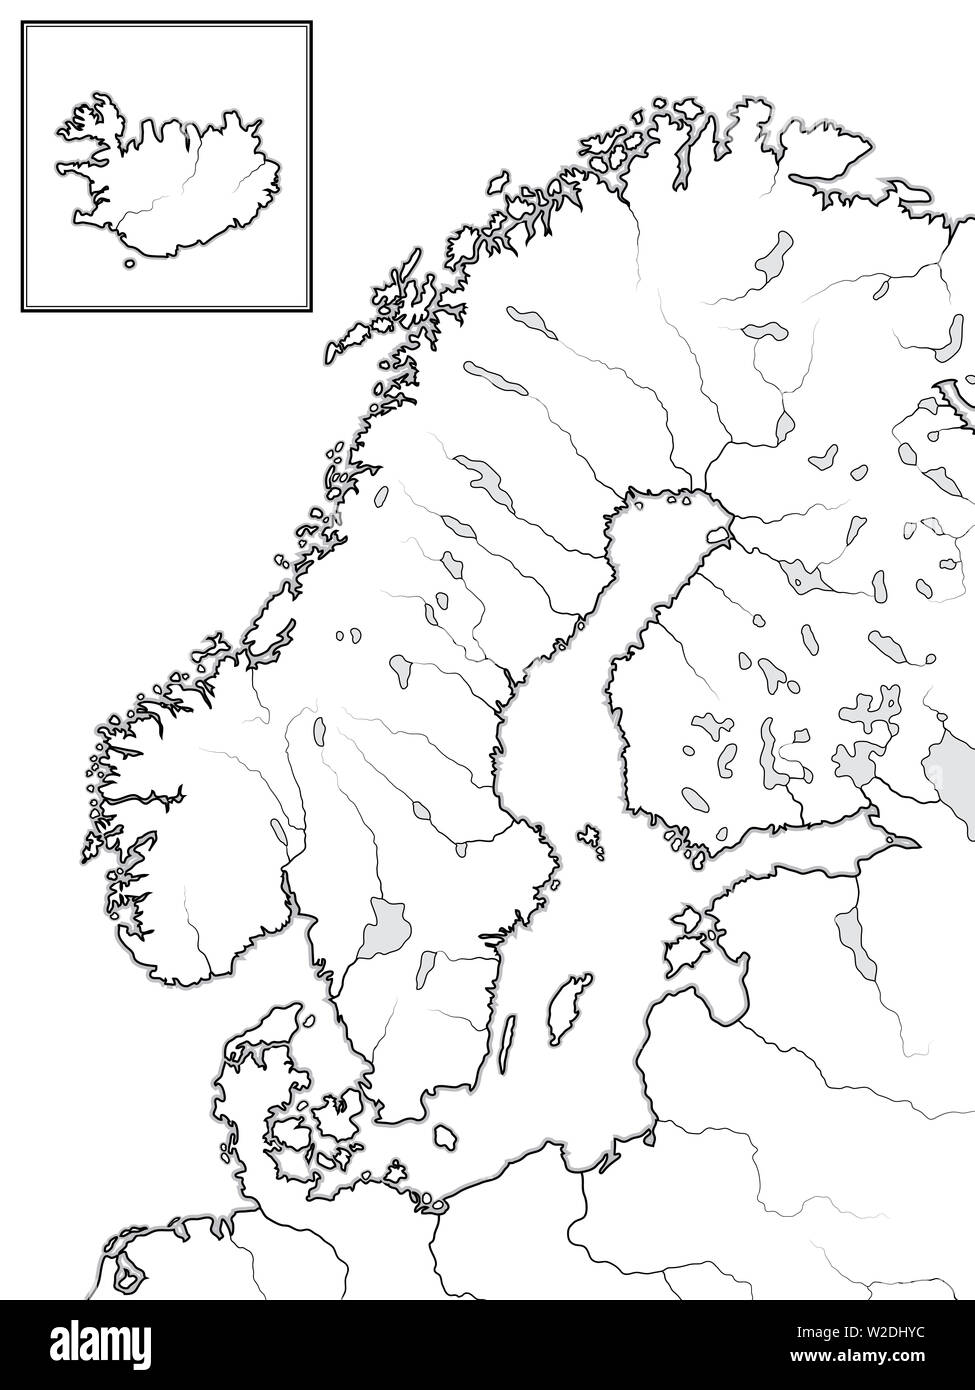 Mappa delle terre scandinavi: Scandinavia, Svezia, Norvegia, Finlandia, Lapponia, Carelia, Baltia, Danimarca e Islanda [Insert]. Grafico geografica. Foto Stock